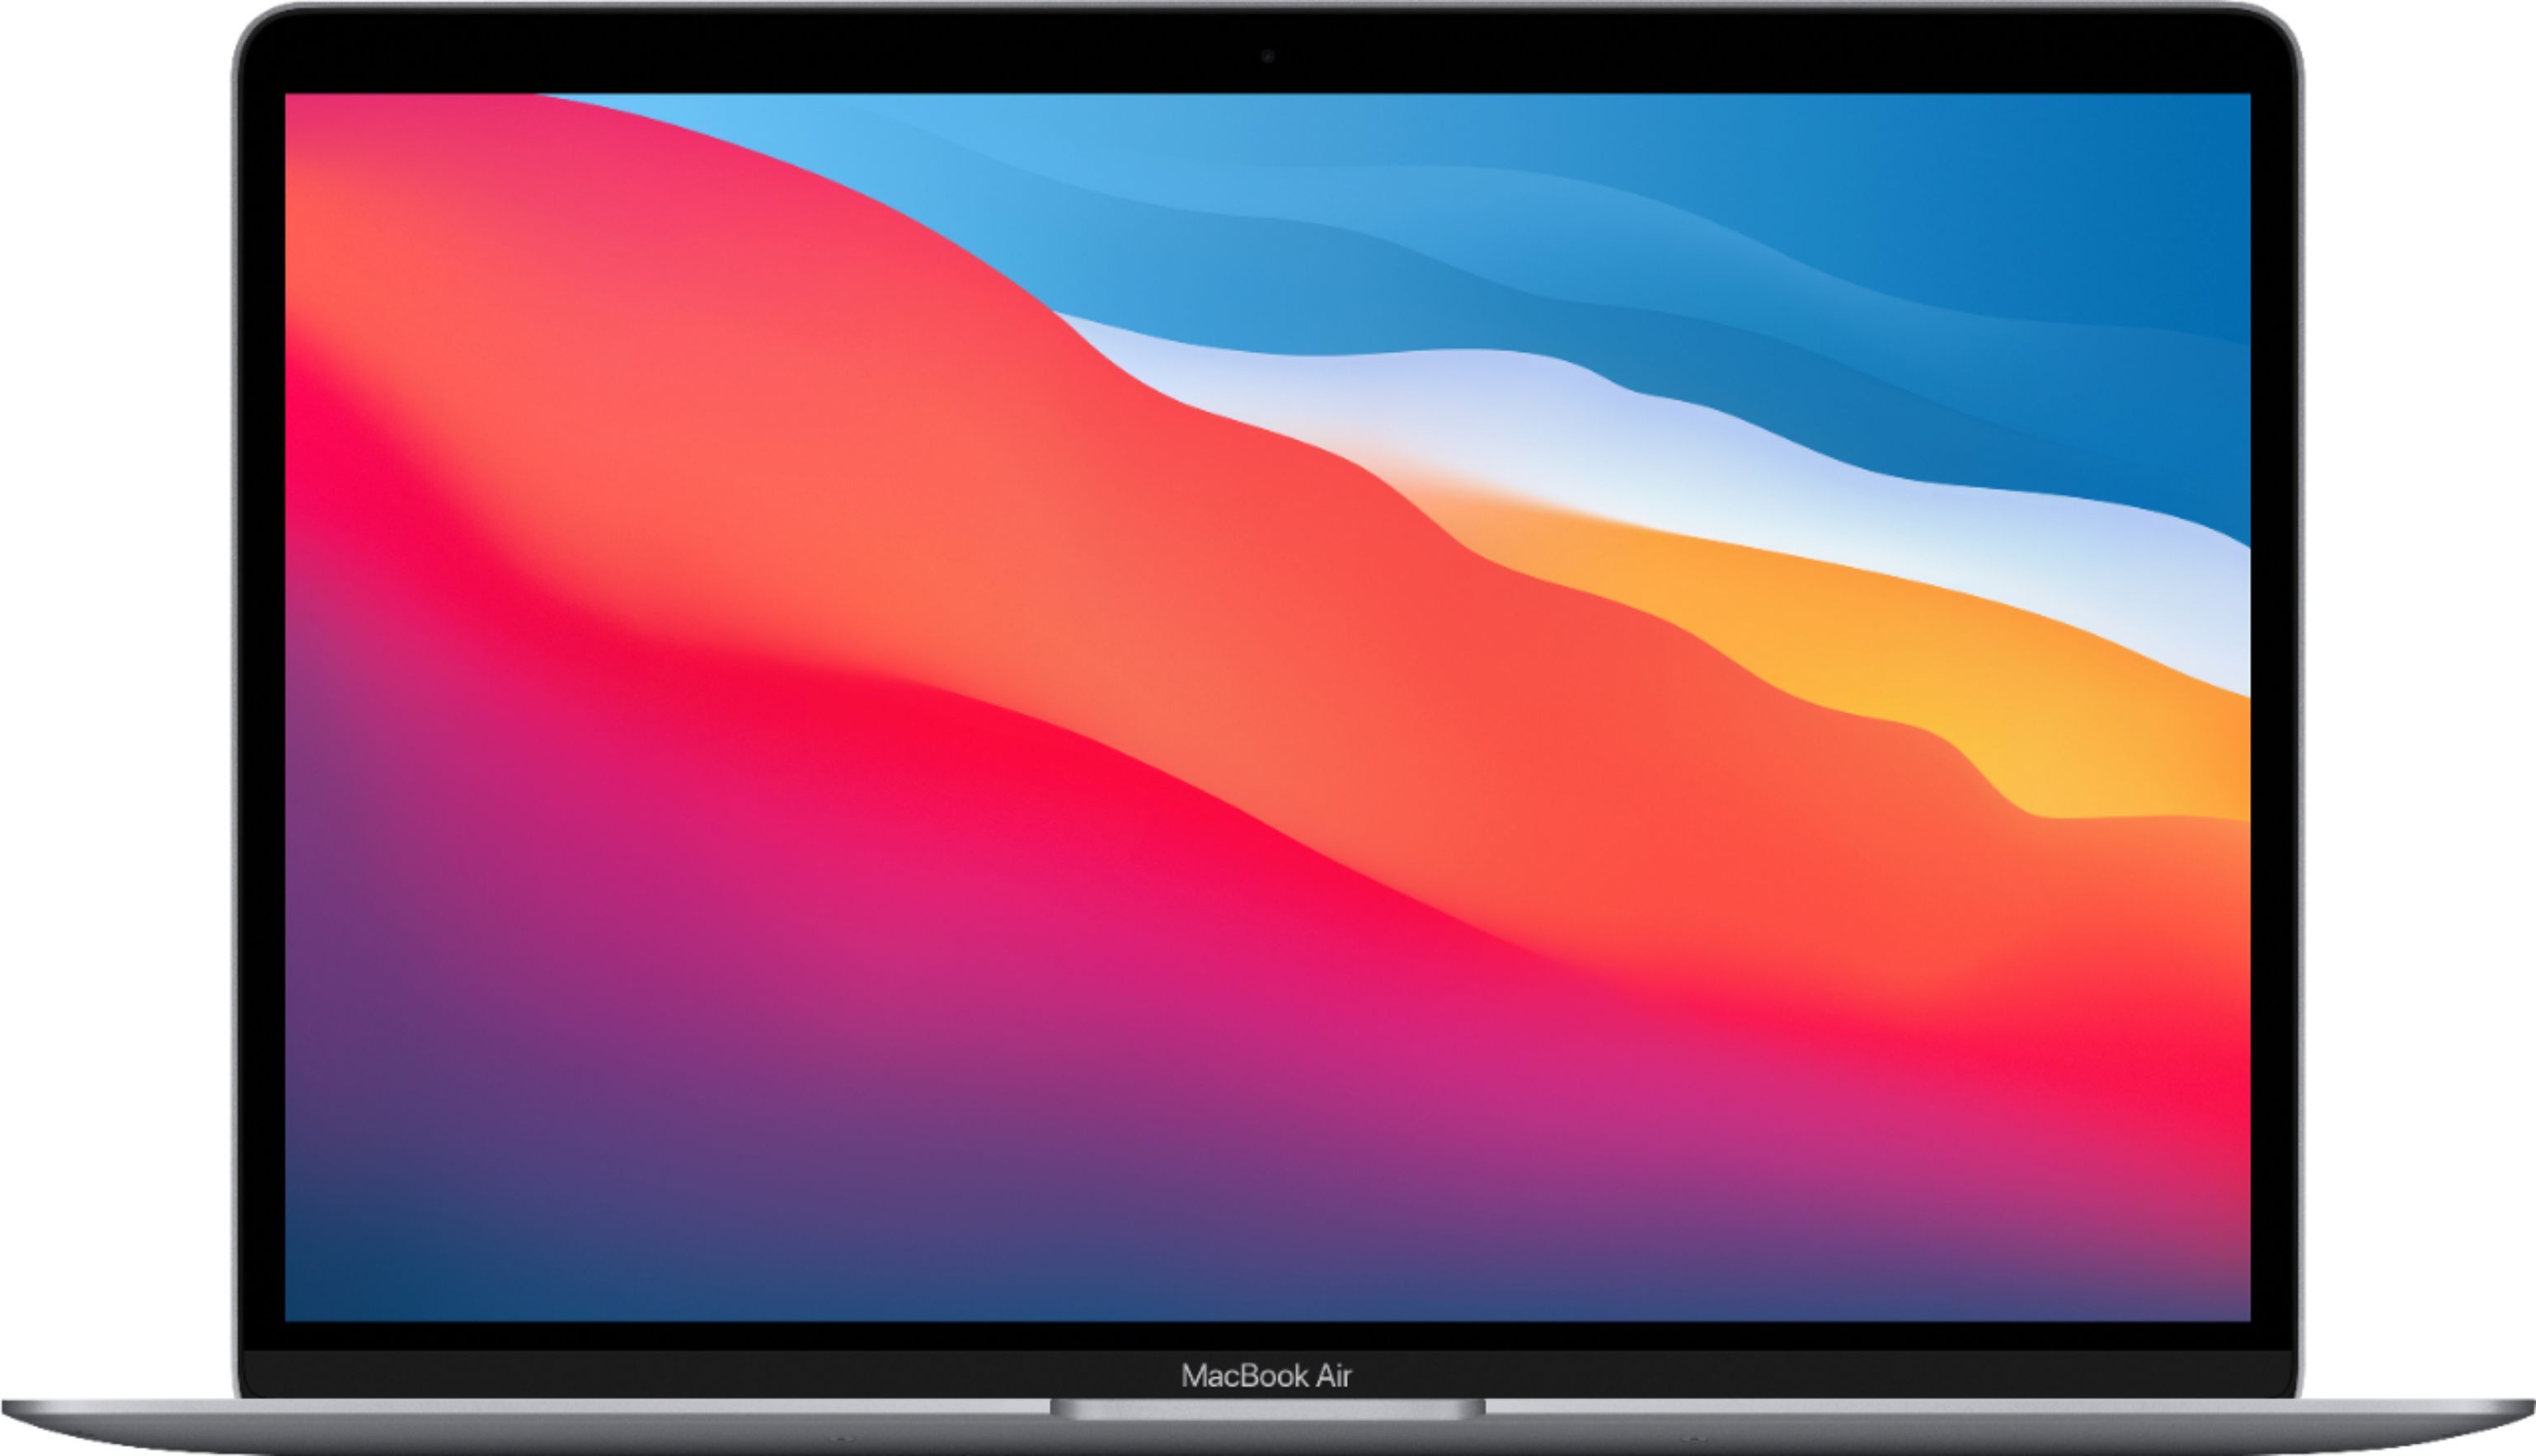 MacBook Air 13.3" Laptop Apple M1 chip 8GB Memory 256GB SSD Space Gray MGN63LL/A - Best Buy | Best Buy U.S.